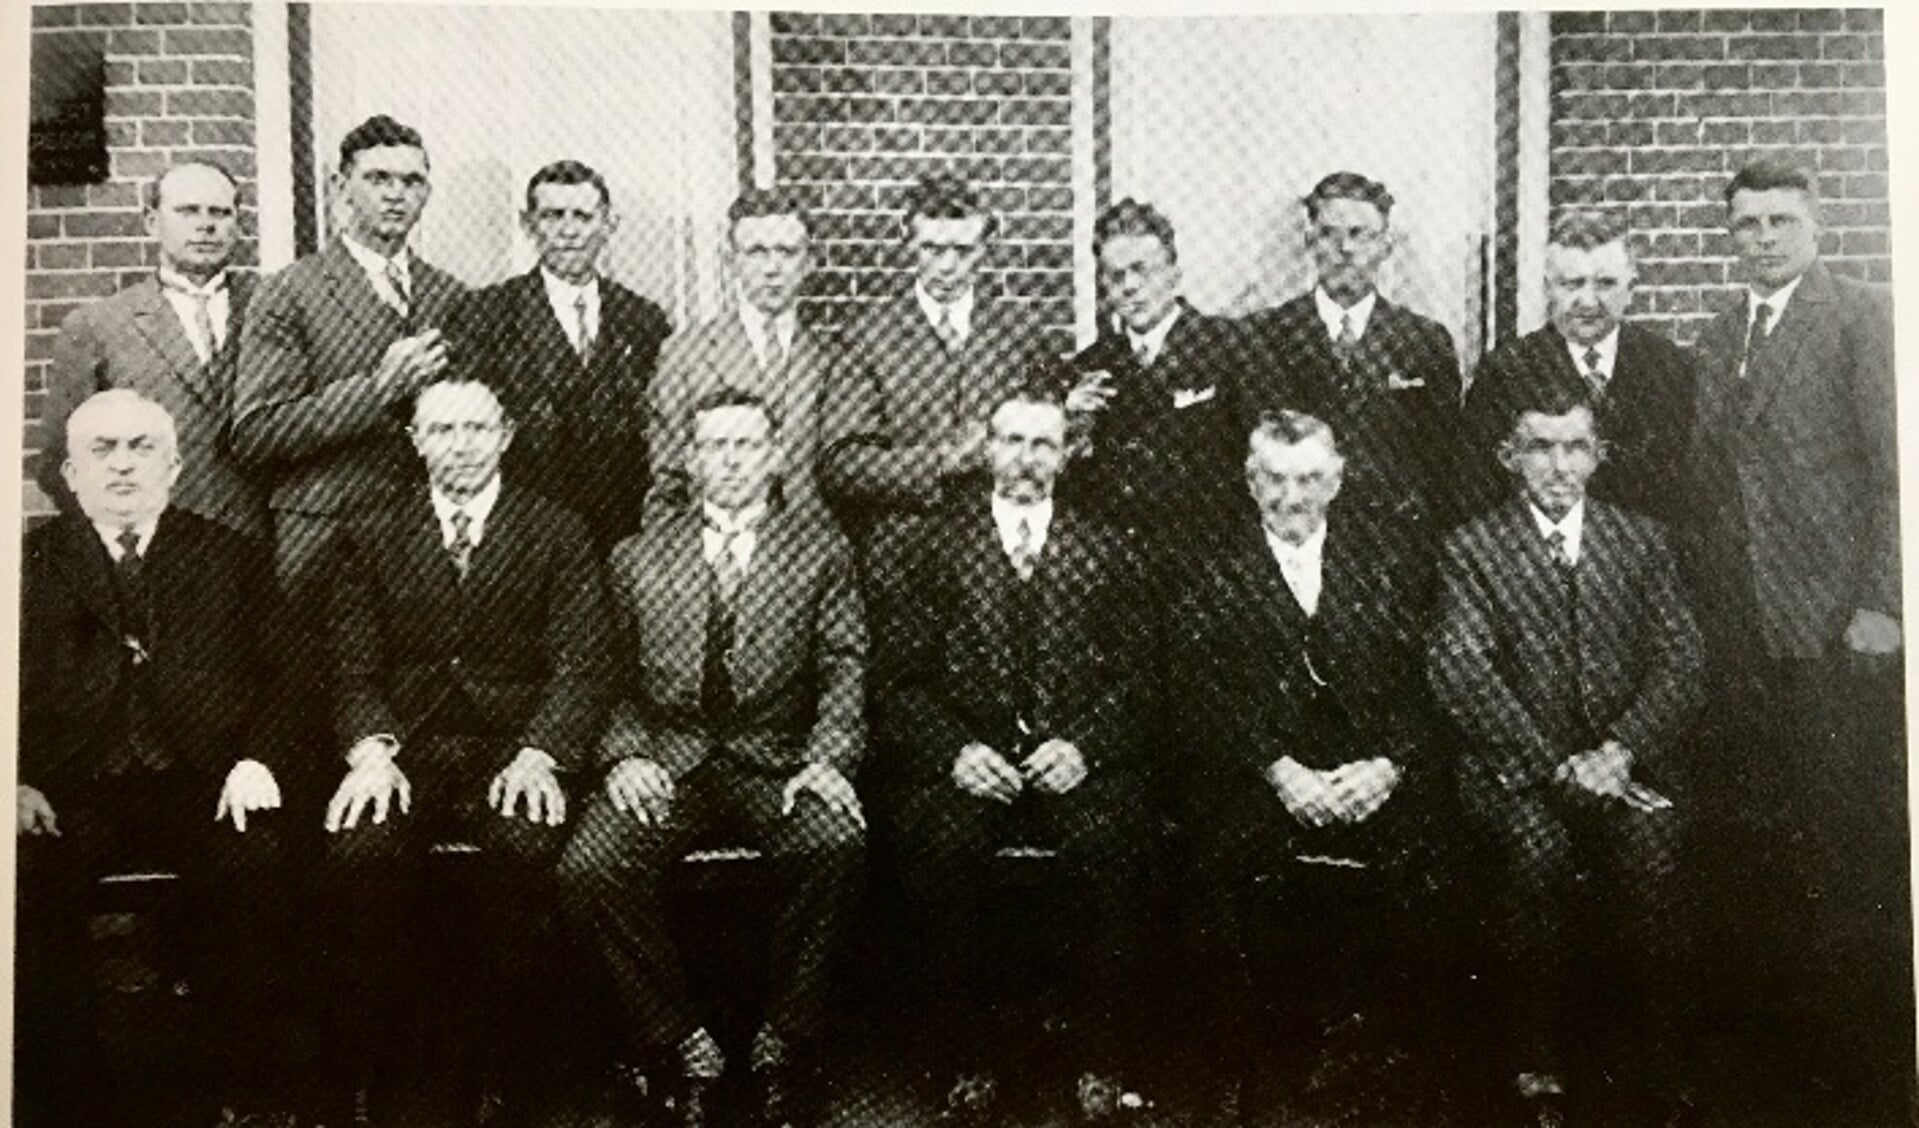 De oudst bewaarde foto, vermoedelijk uit 1928. Deze is genomen voor de woning van de familie Koppert aan de Poeldijkseweg. Staand van links naar rechts: G. Spekman, A. van der Arend, J. Bentvelzen, N. de Bruin, P. Zuidgeest jr., N. van der Laan, C. Damen, N. de Bruin en A. Veerkamp. Zittend van links naar rechts: J. van Leent; N. Koppert, P. Damen, J. Koppert, P. Zuidgeest sr. en H. van der Laar.